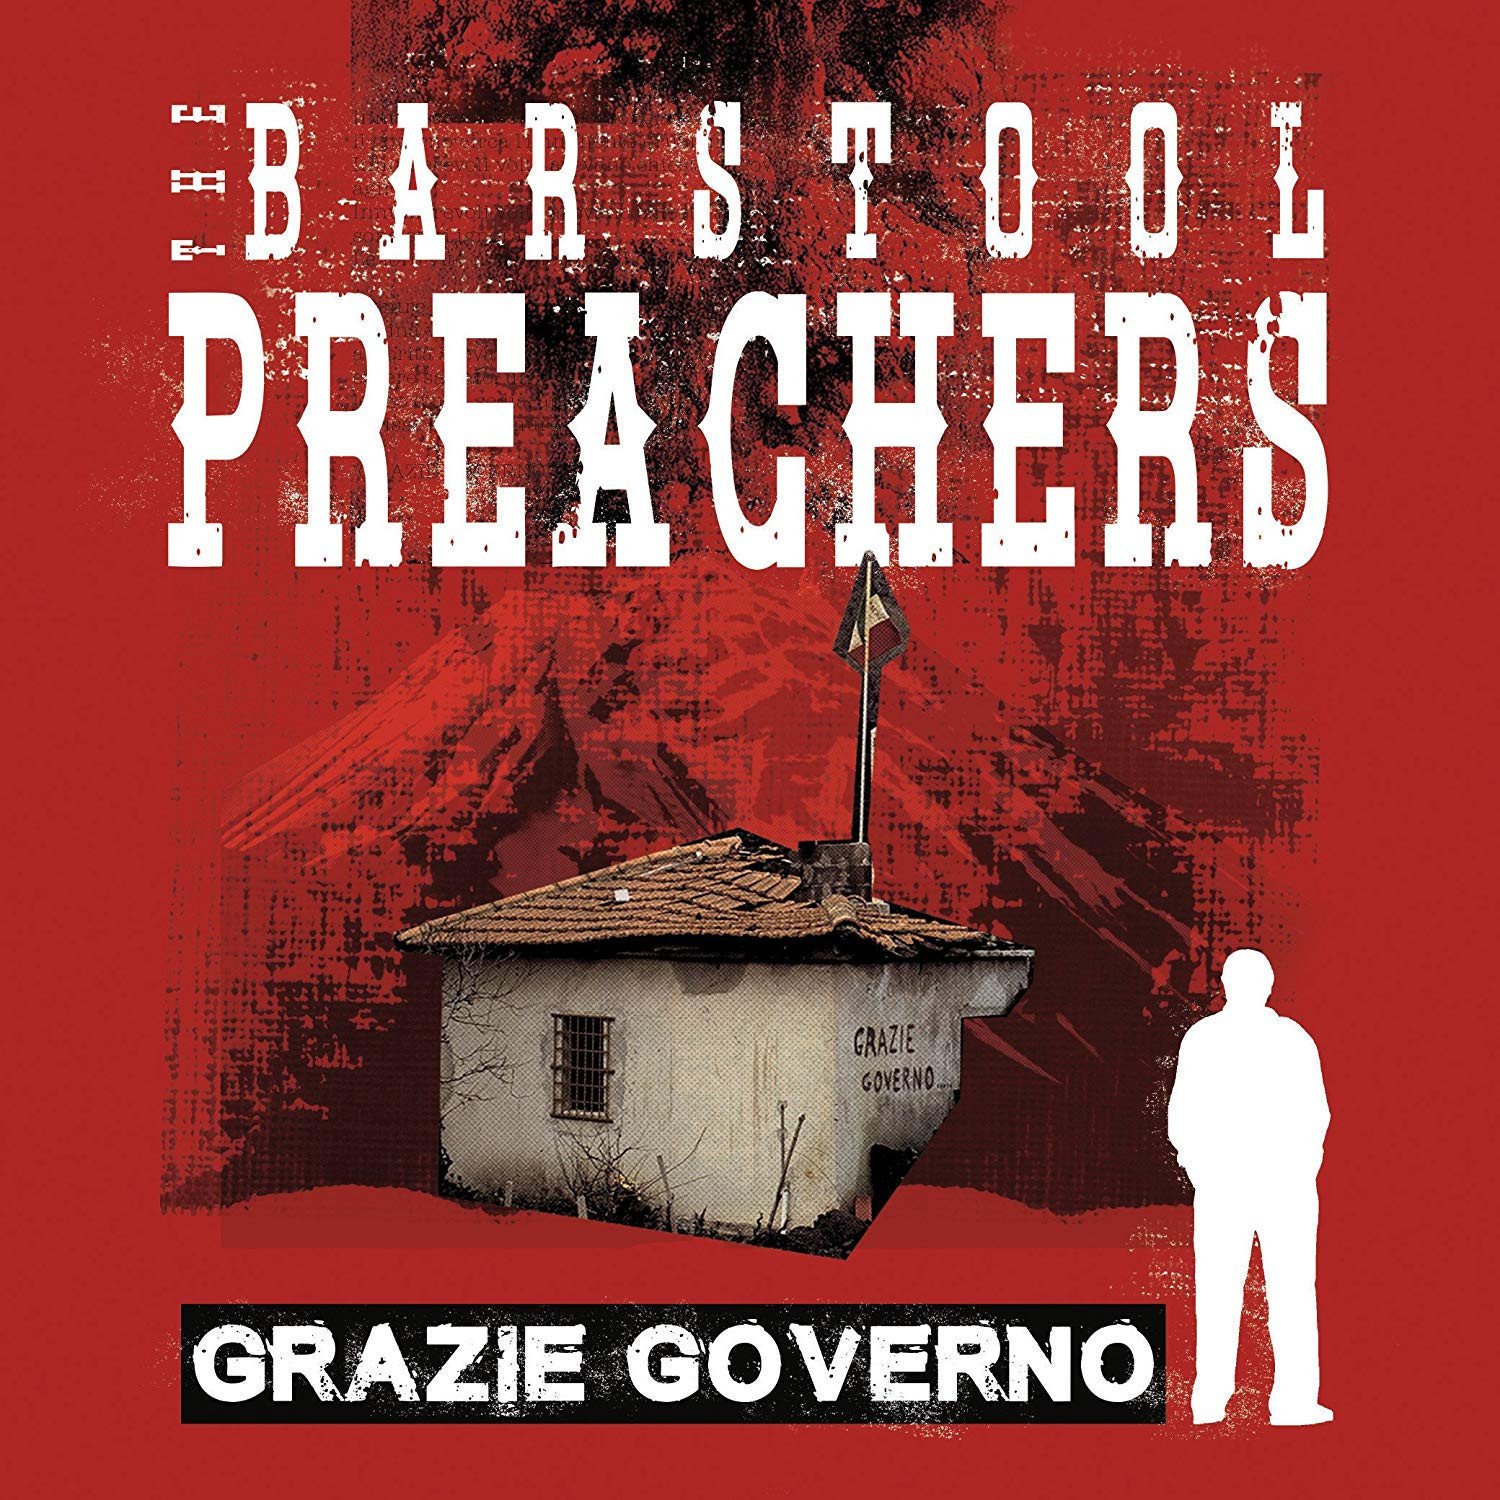 Vinyl Record The Barstool Preachers - Grazie Governo (Bone Coloured) (Deluxe Edition) (LP)